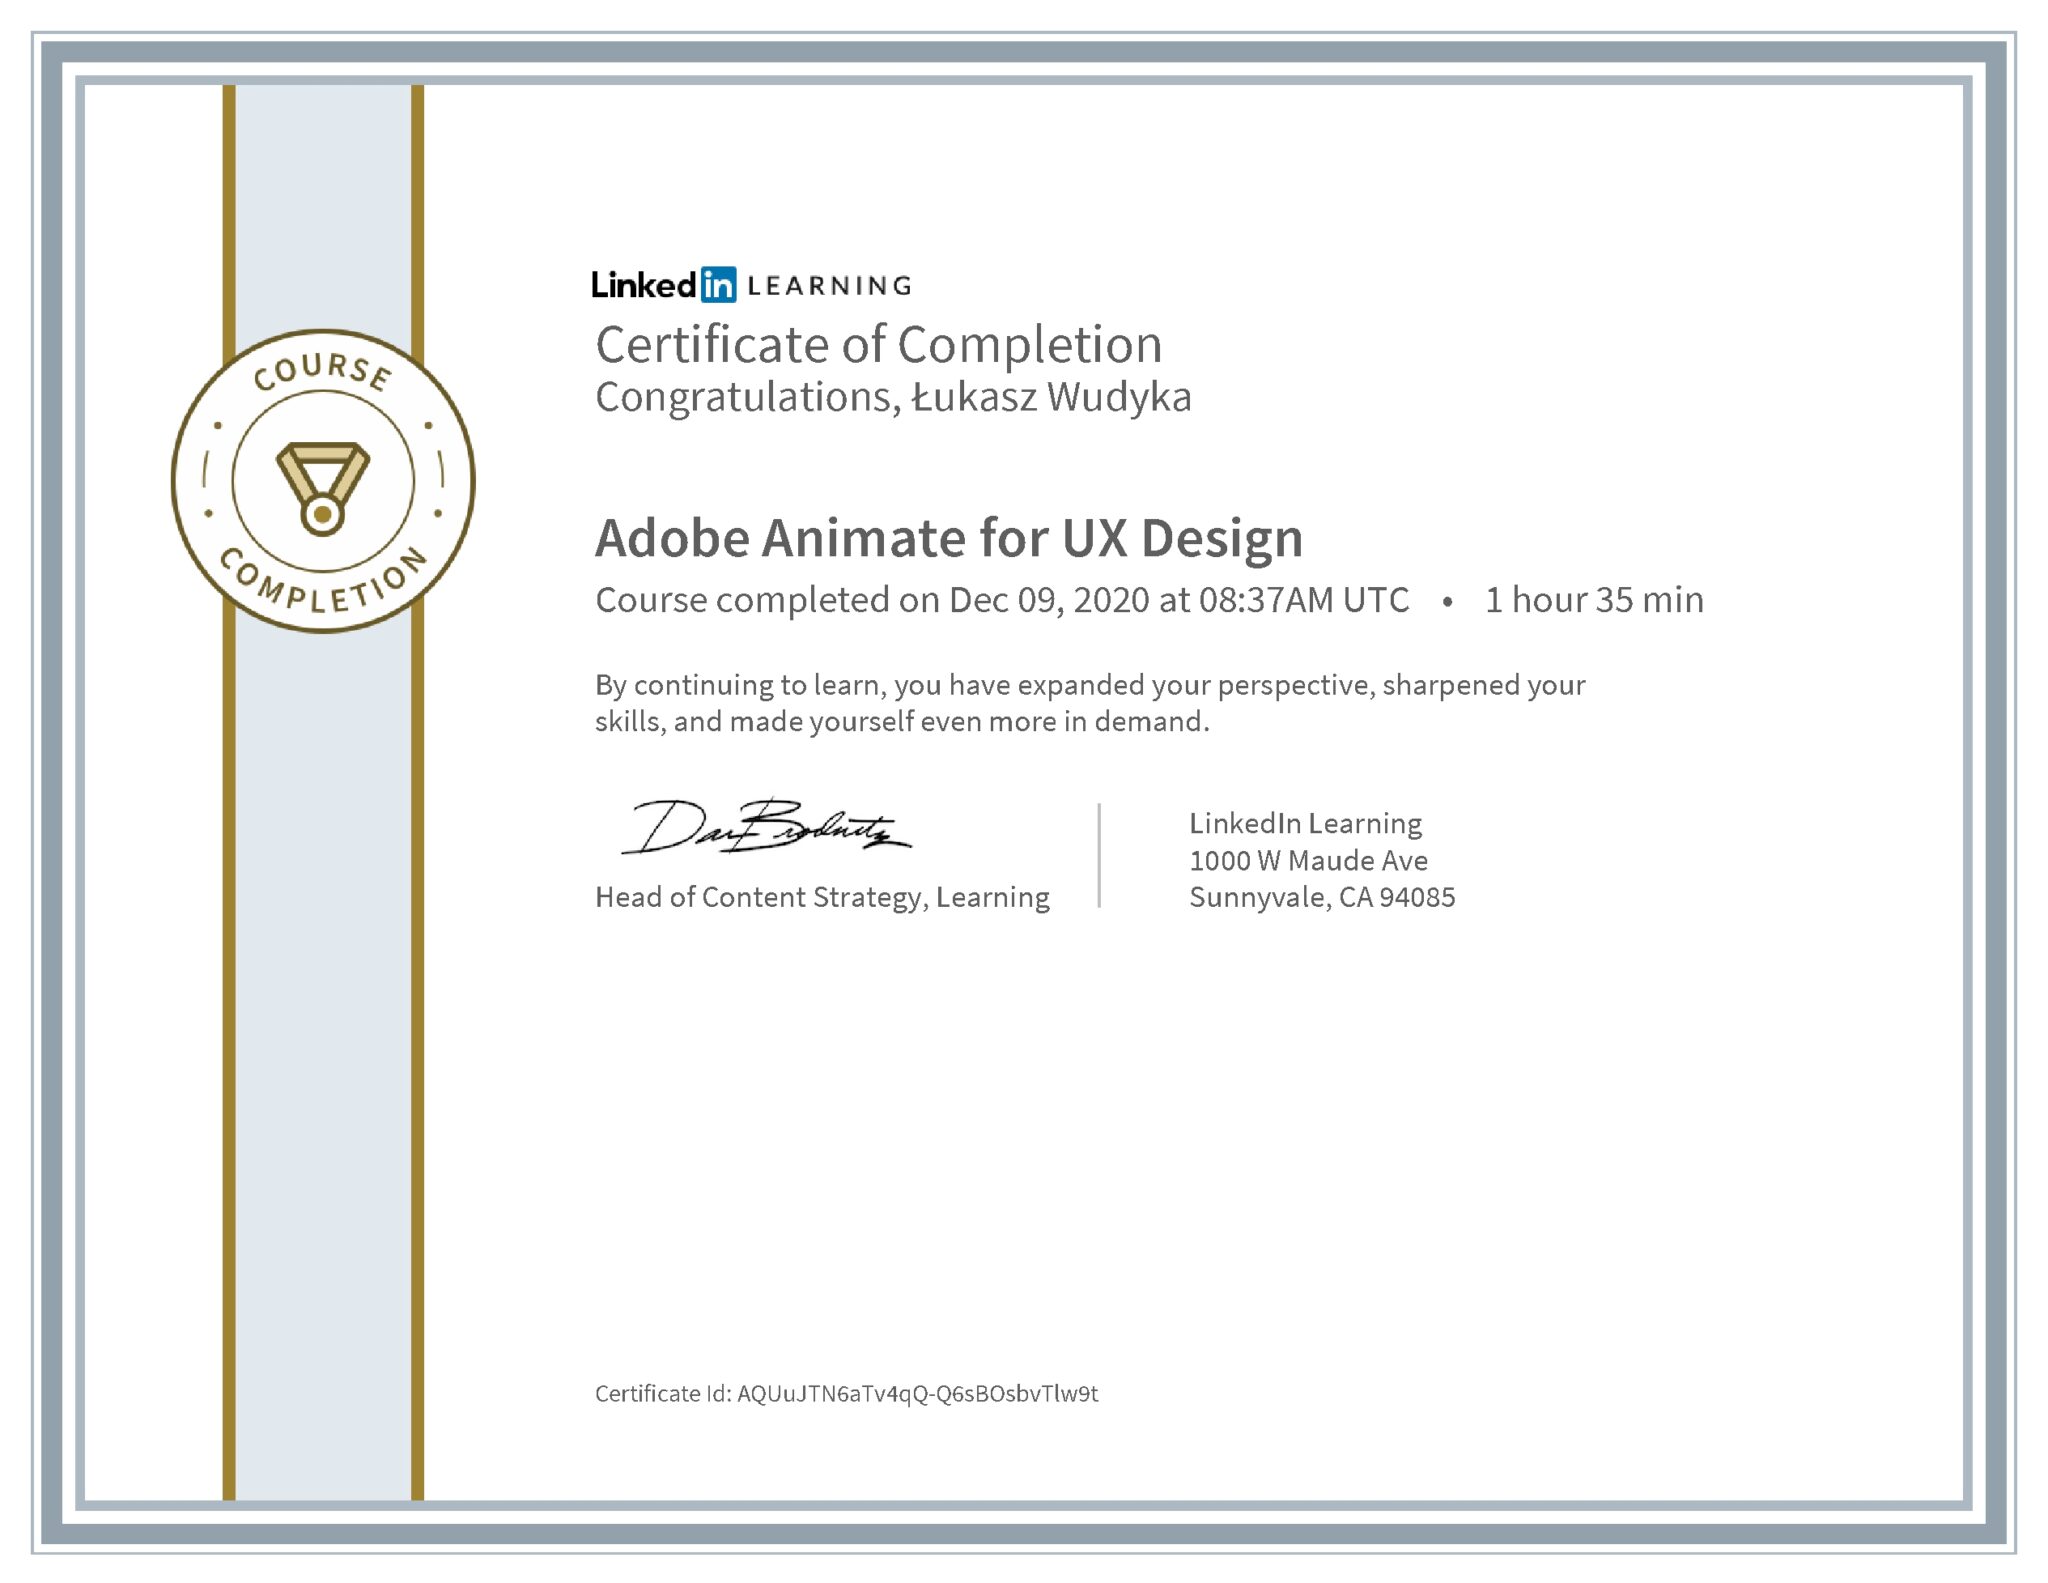 Łukasz Wudyka certyfikat LinkedIn Adobe Animate for UX Design